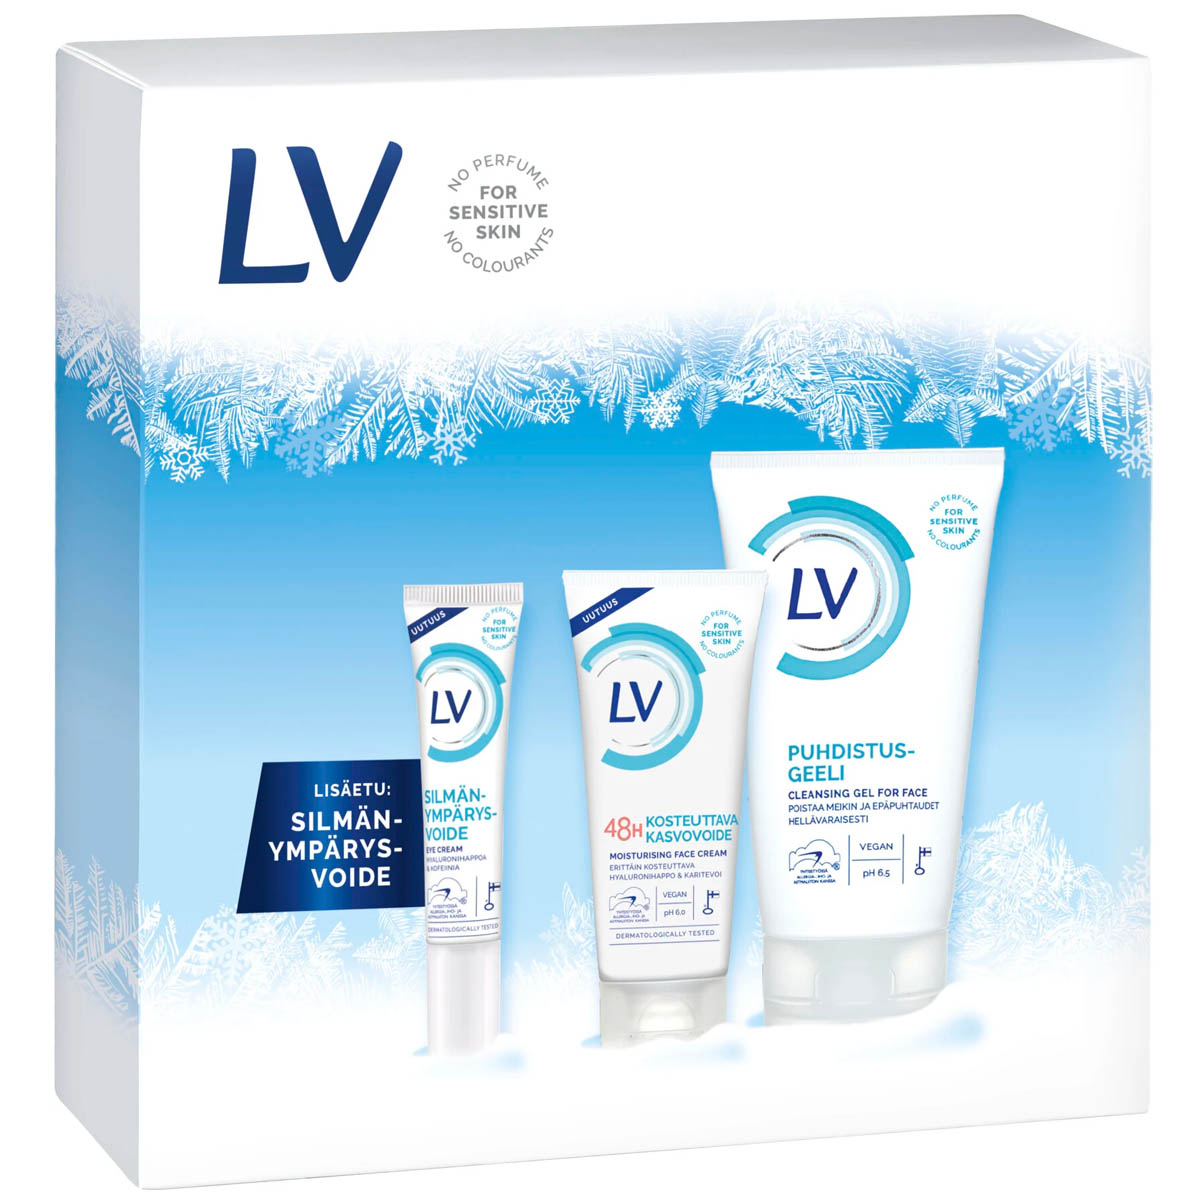 LV Skin care gift box